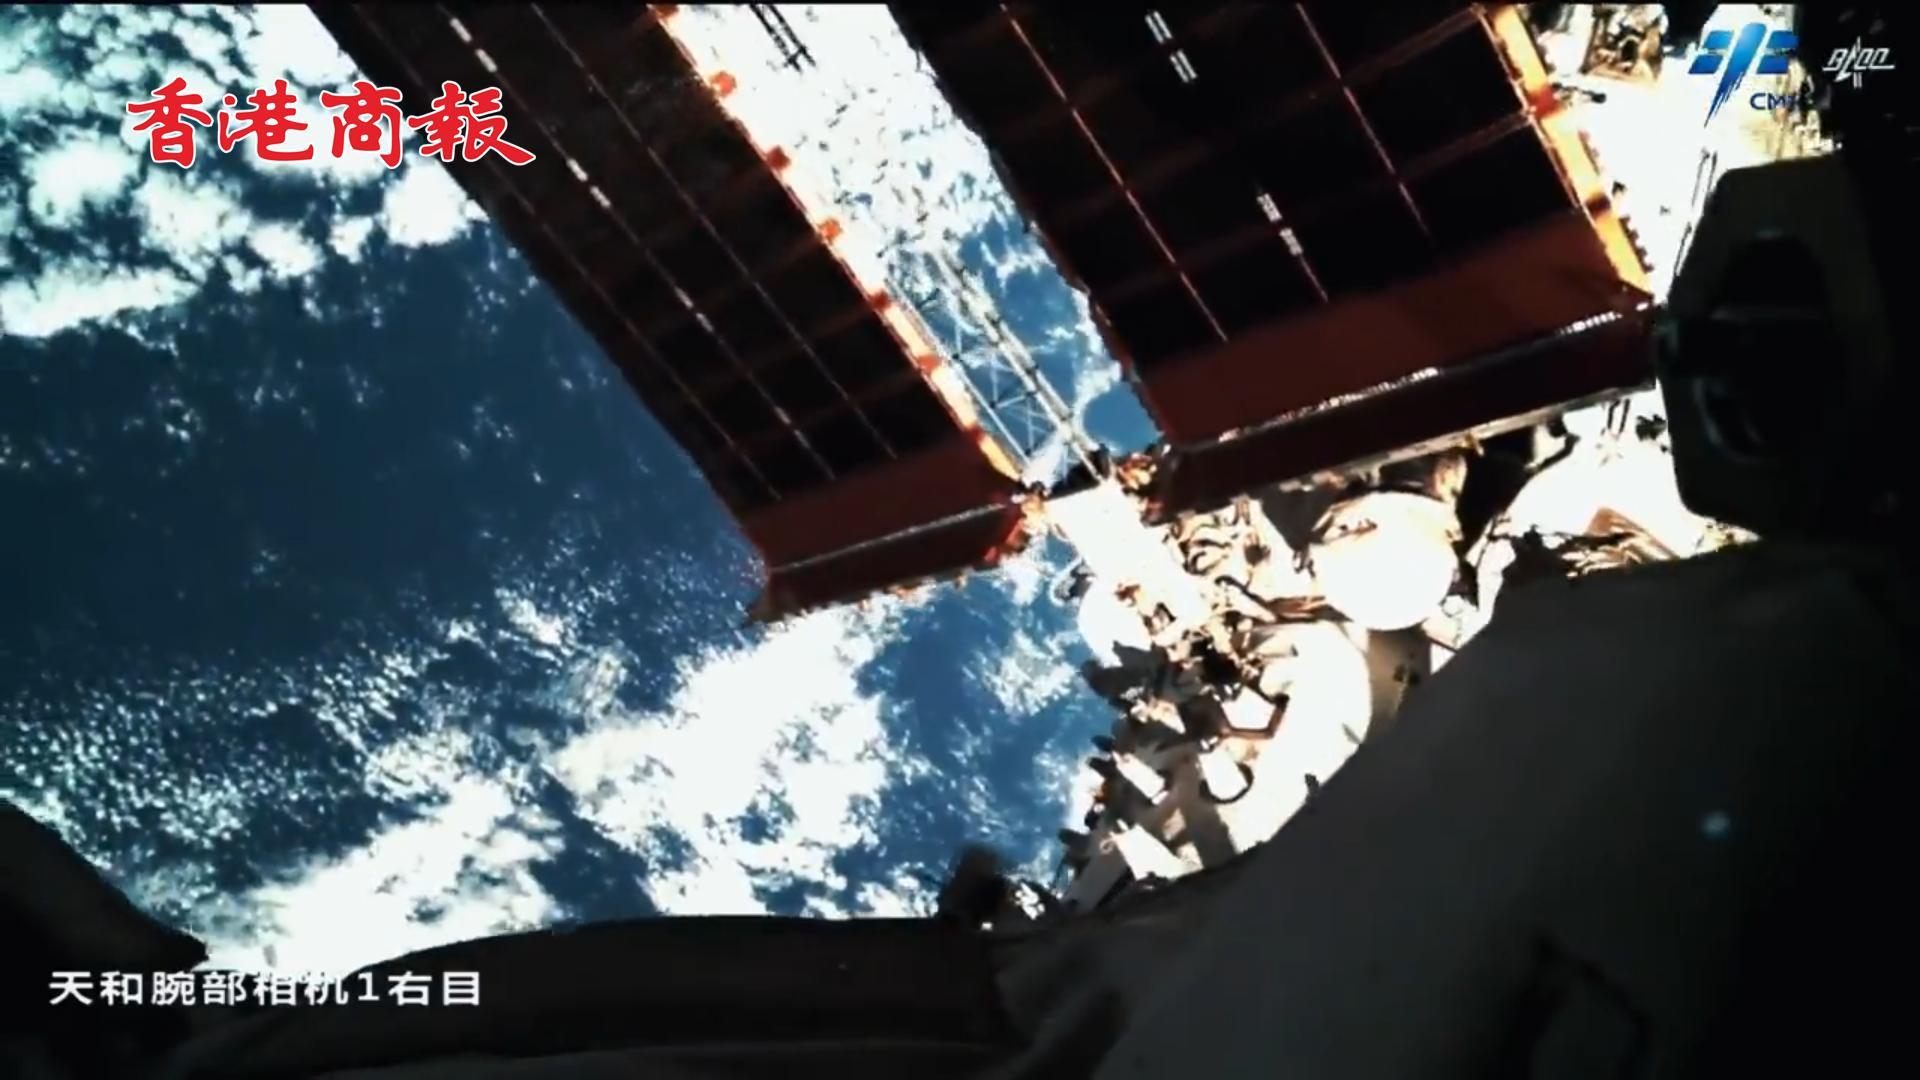 有片丨中國空間站機械臂巡檢空間站最新視頻